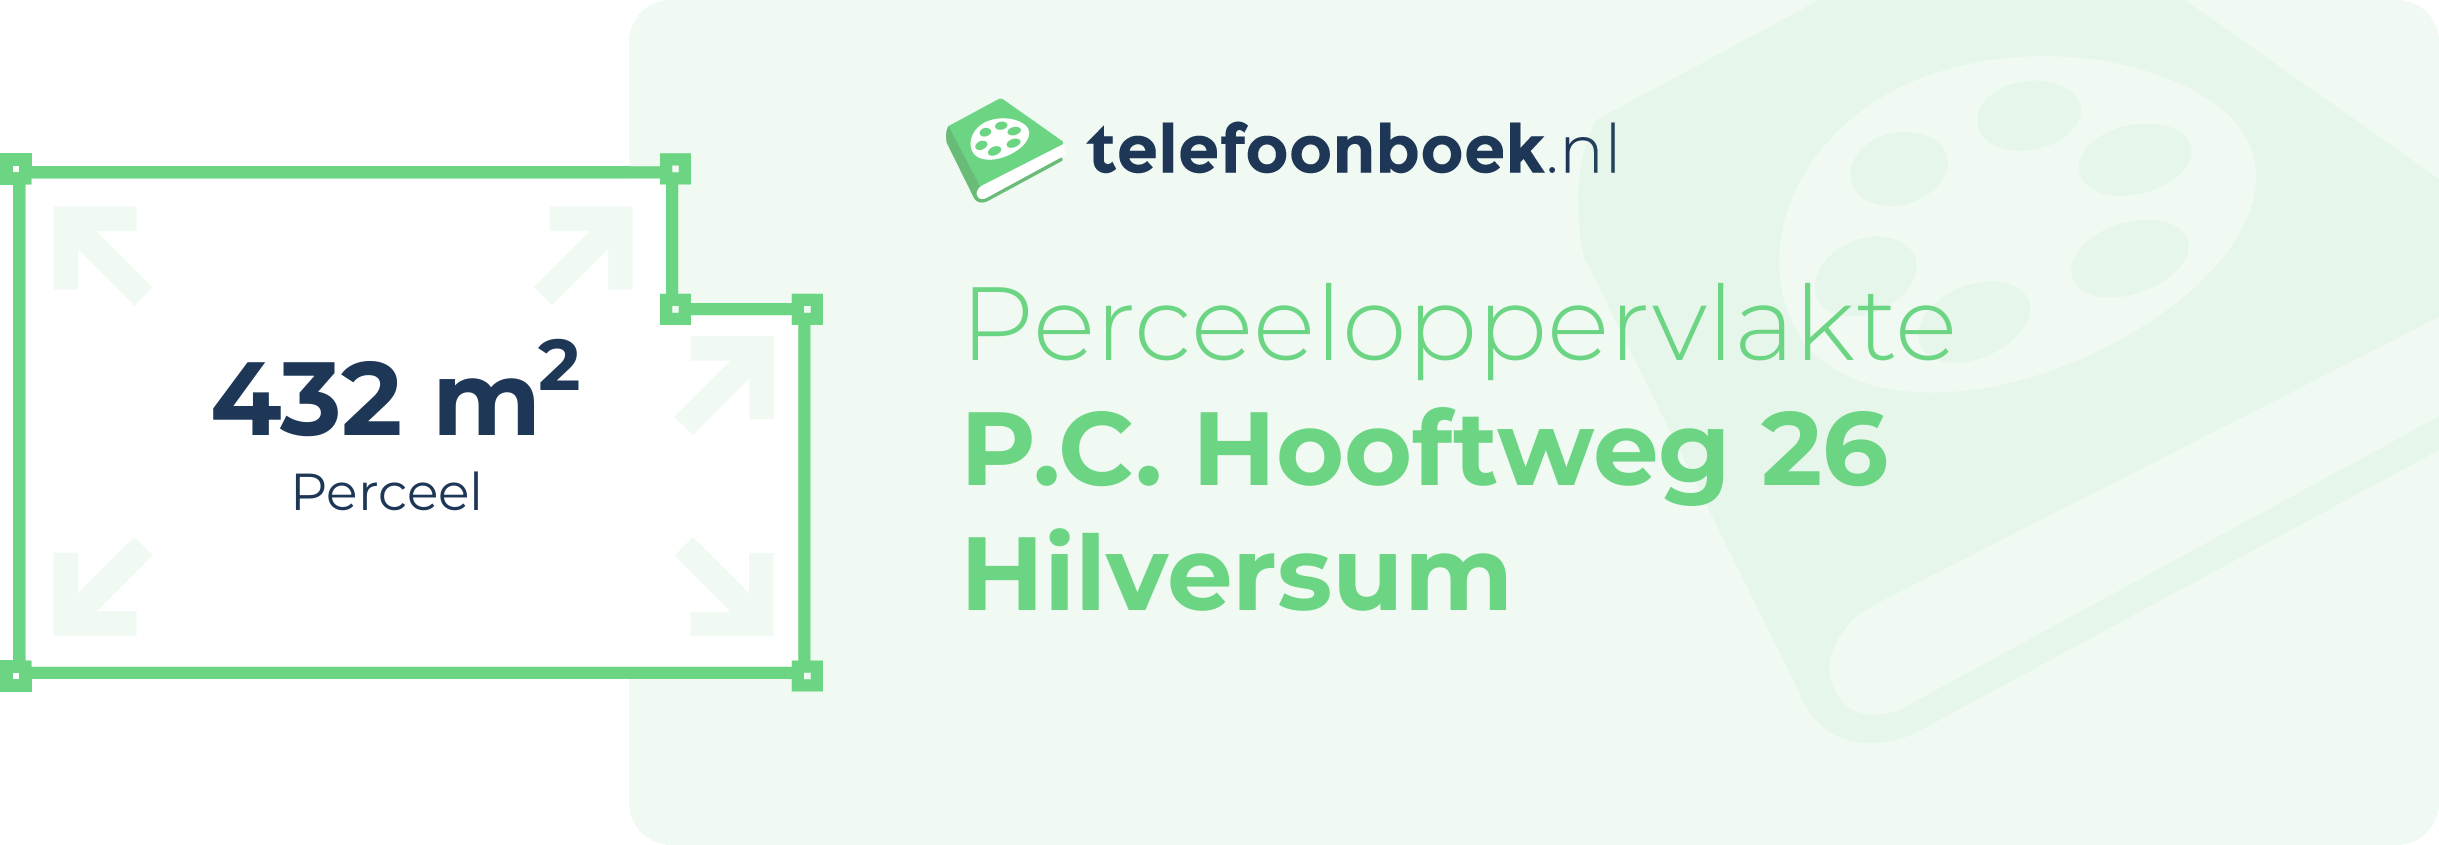 Perceeloppervlakte P.C. Hooftweg 26 Hilversum